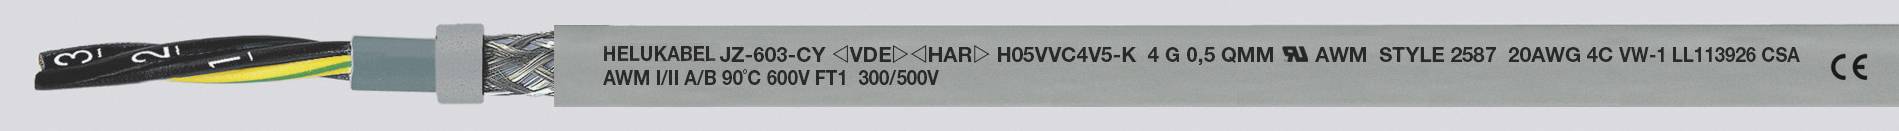 HELUKABEL JZ-603-CY Steuerleitung 5 G 0.50 mm² Grau 83722-1000 1000 m